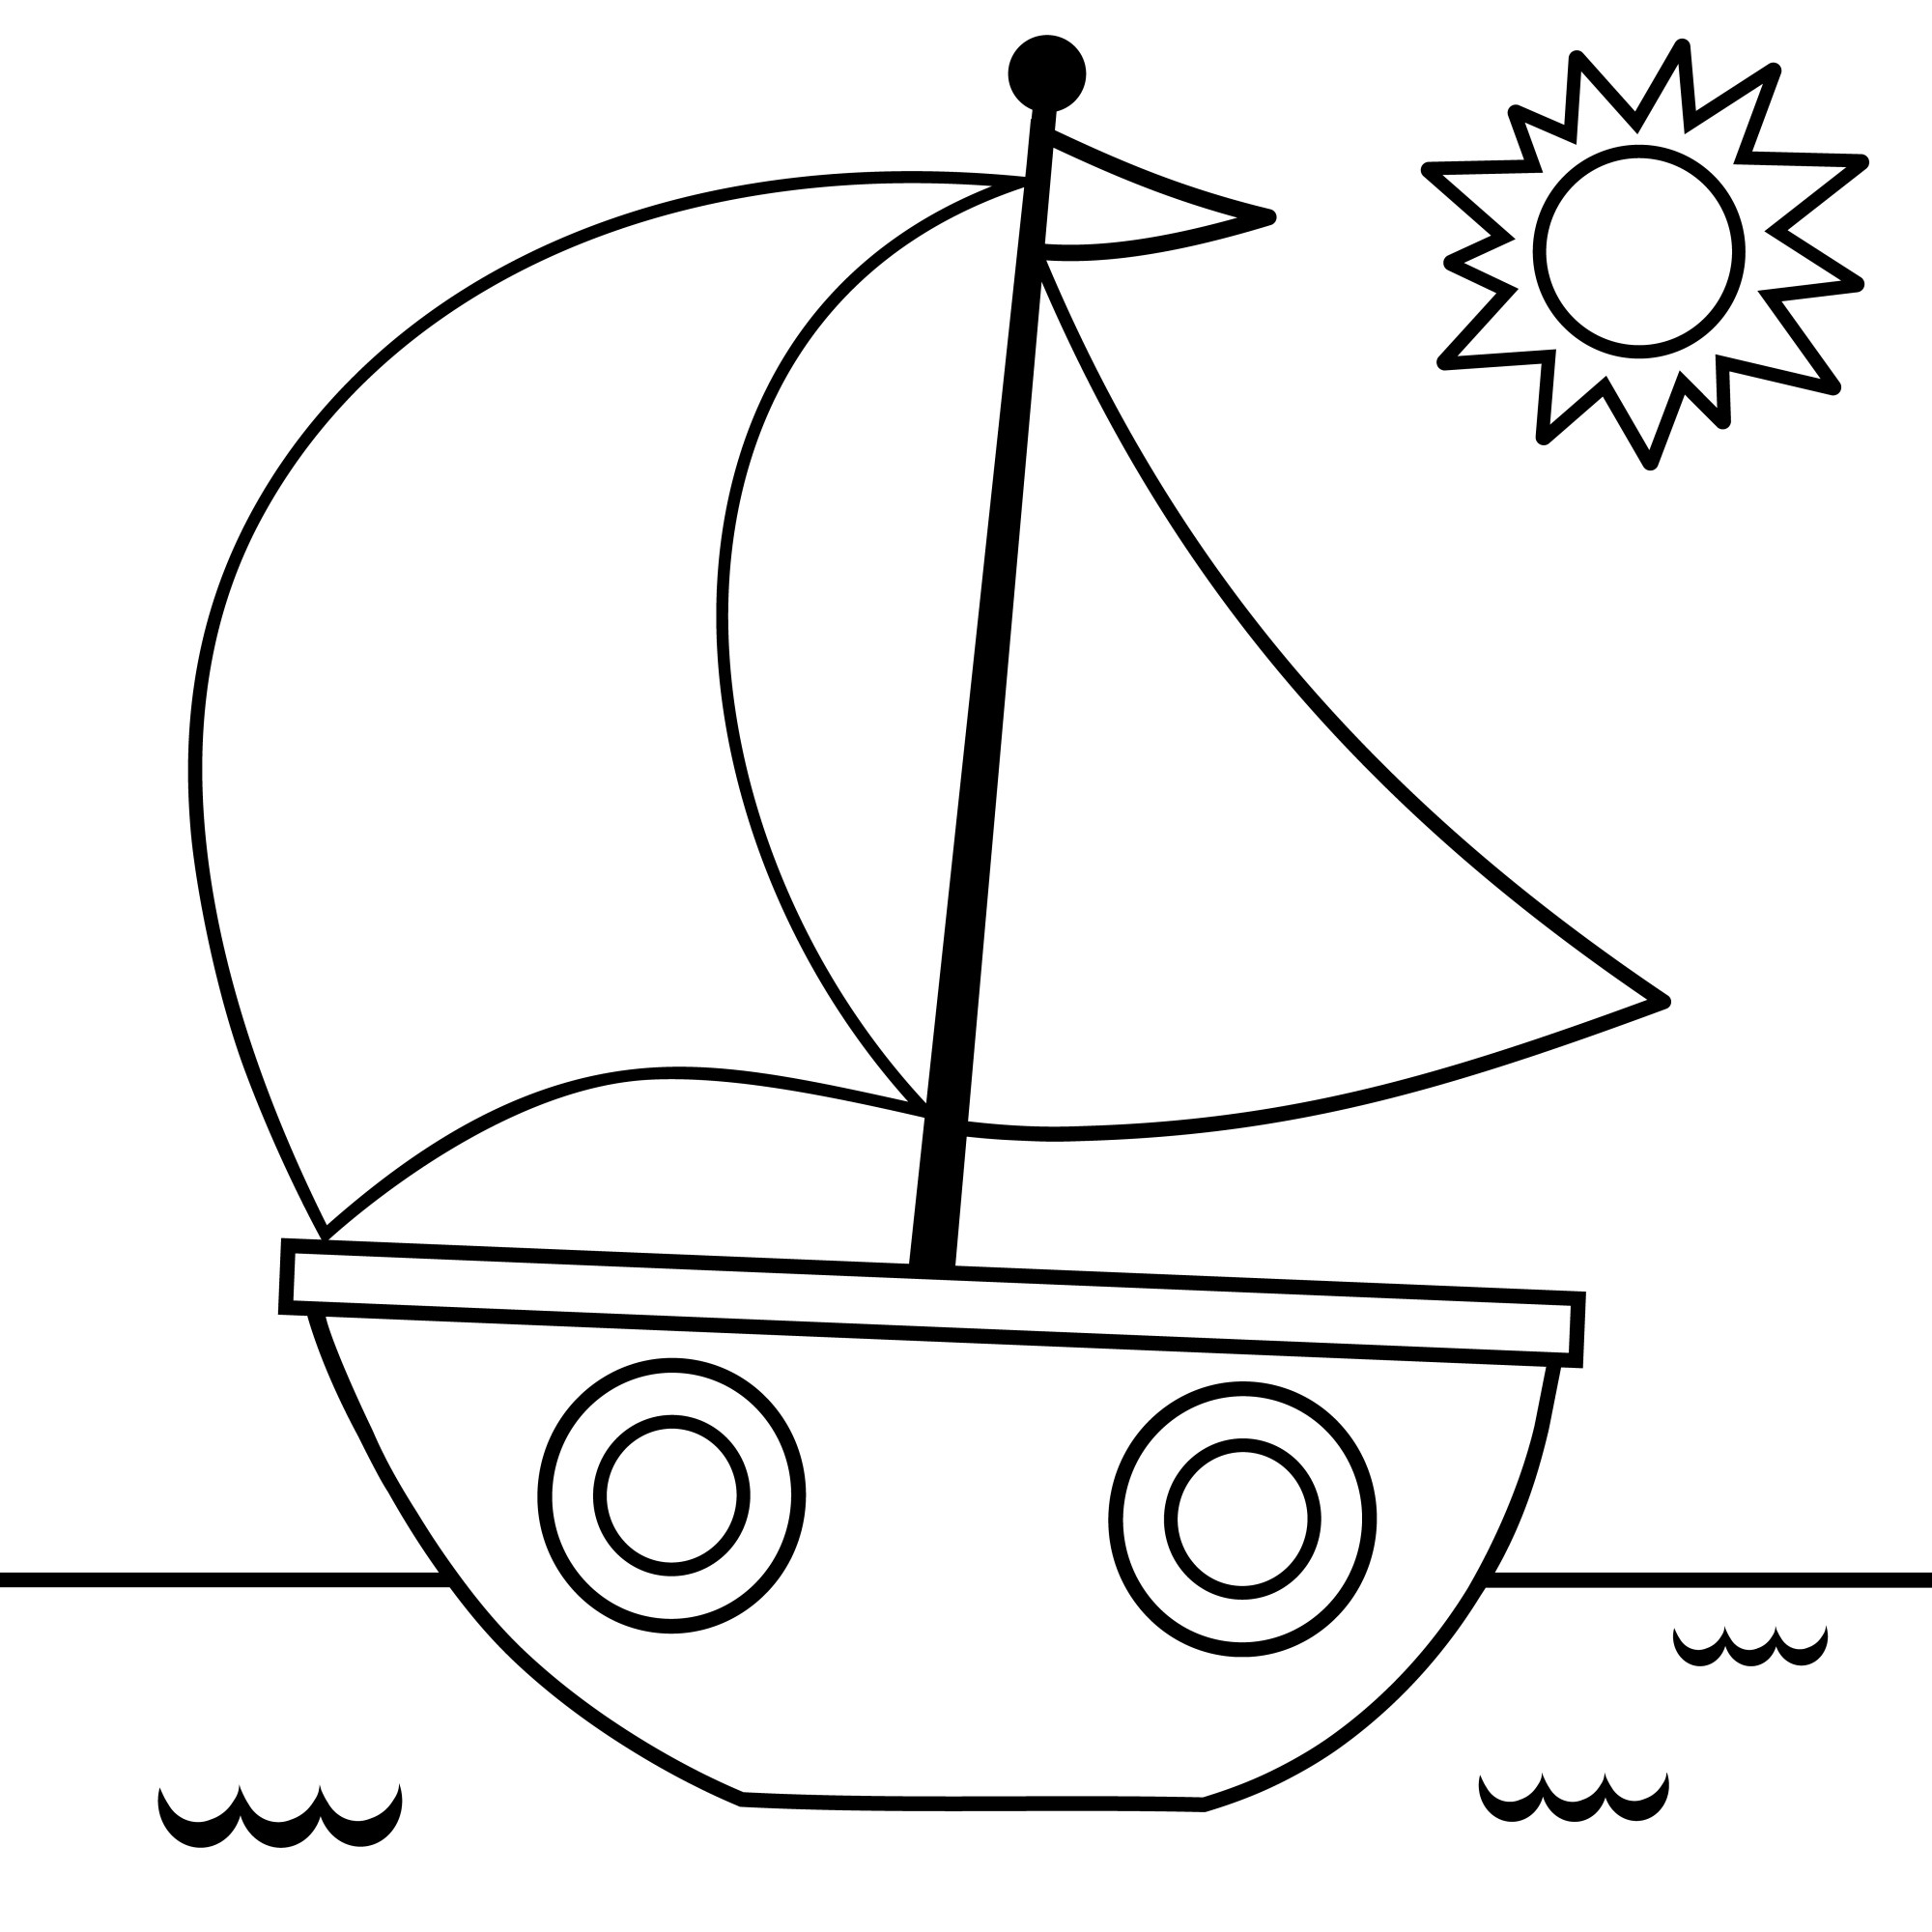 Раскраска для детей: игрушечный кораблик и солнце